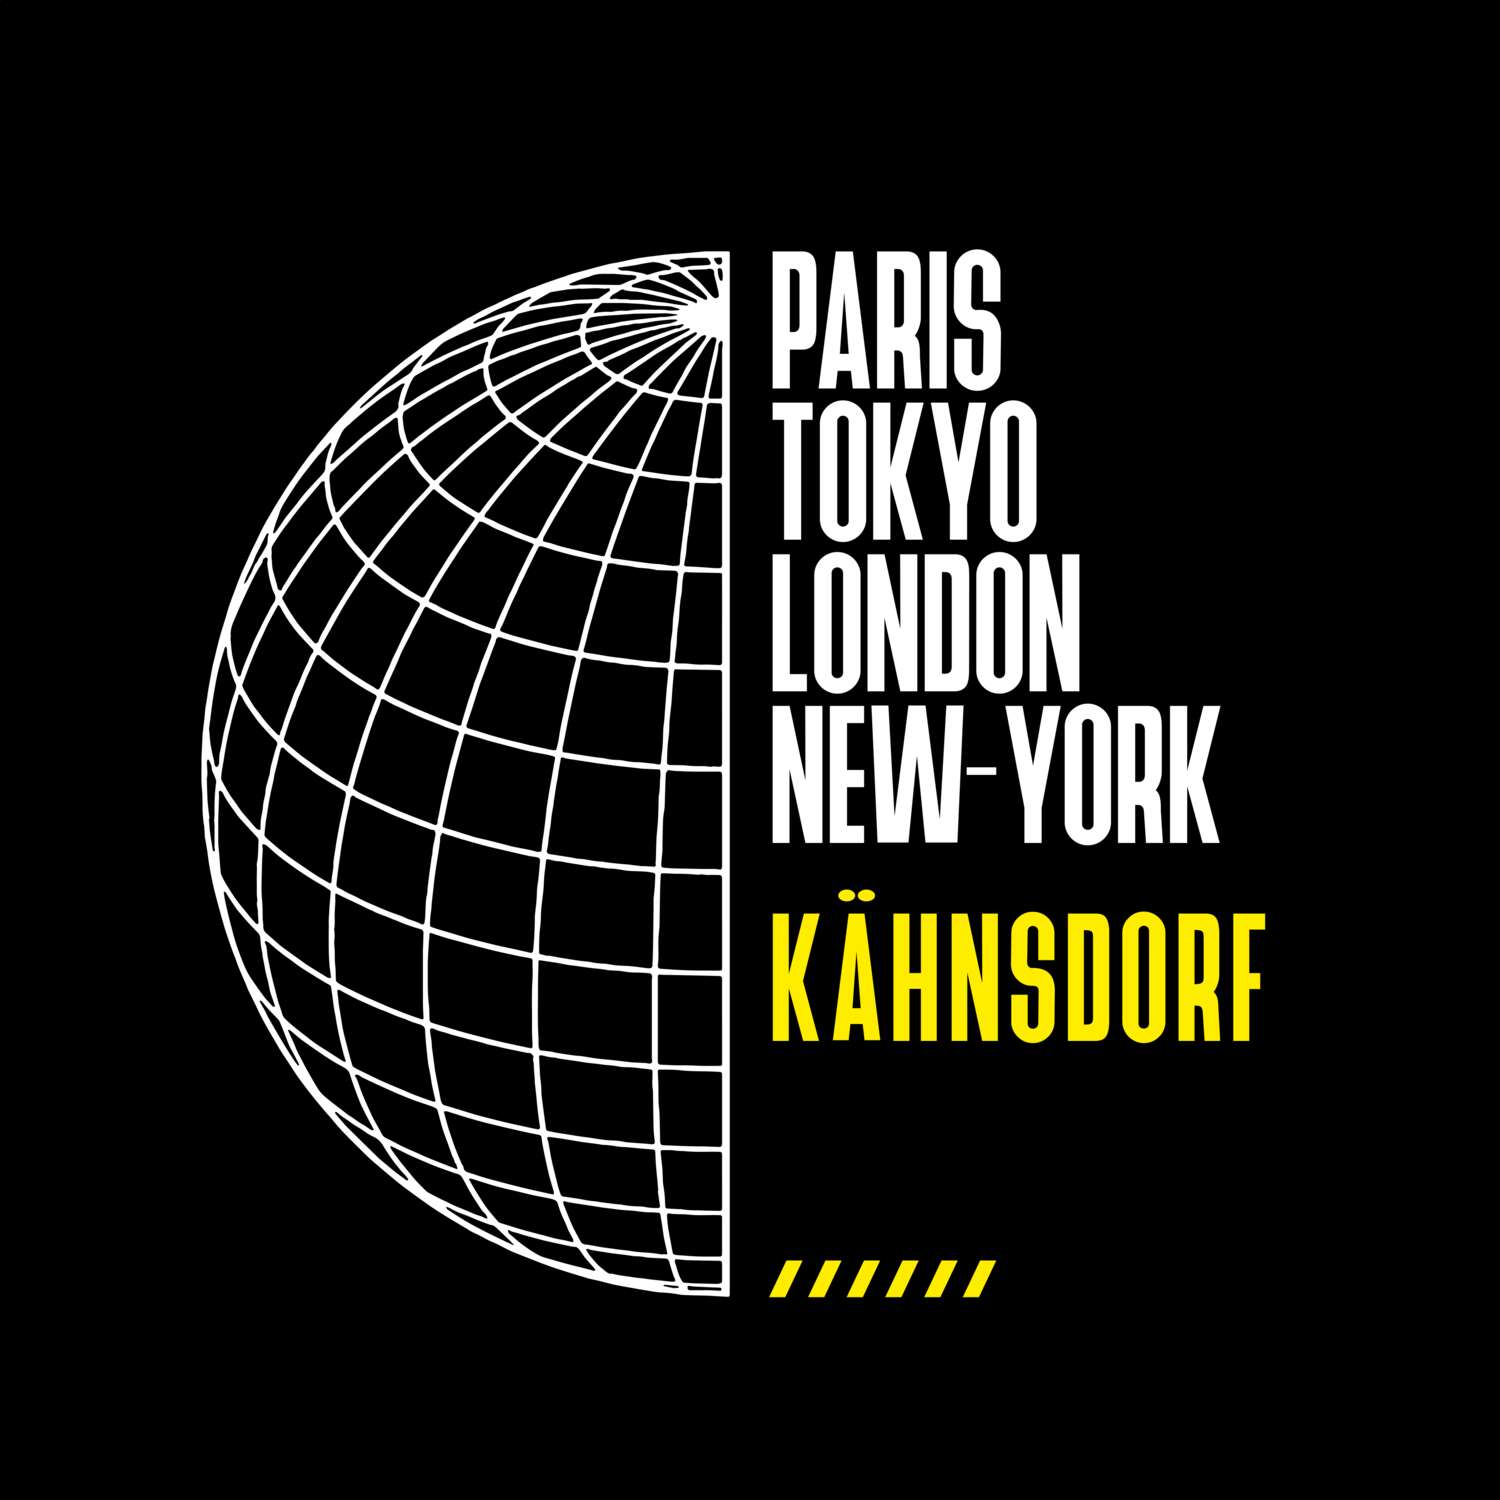 Kähnsdorf T-Shirt »Paris Tokyo London«